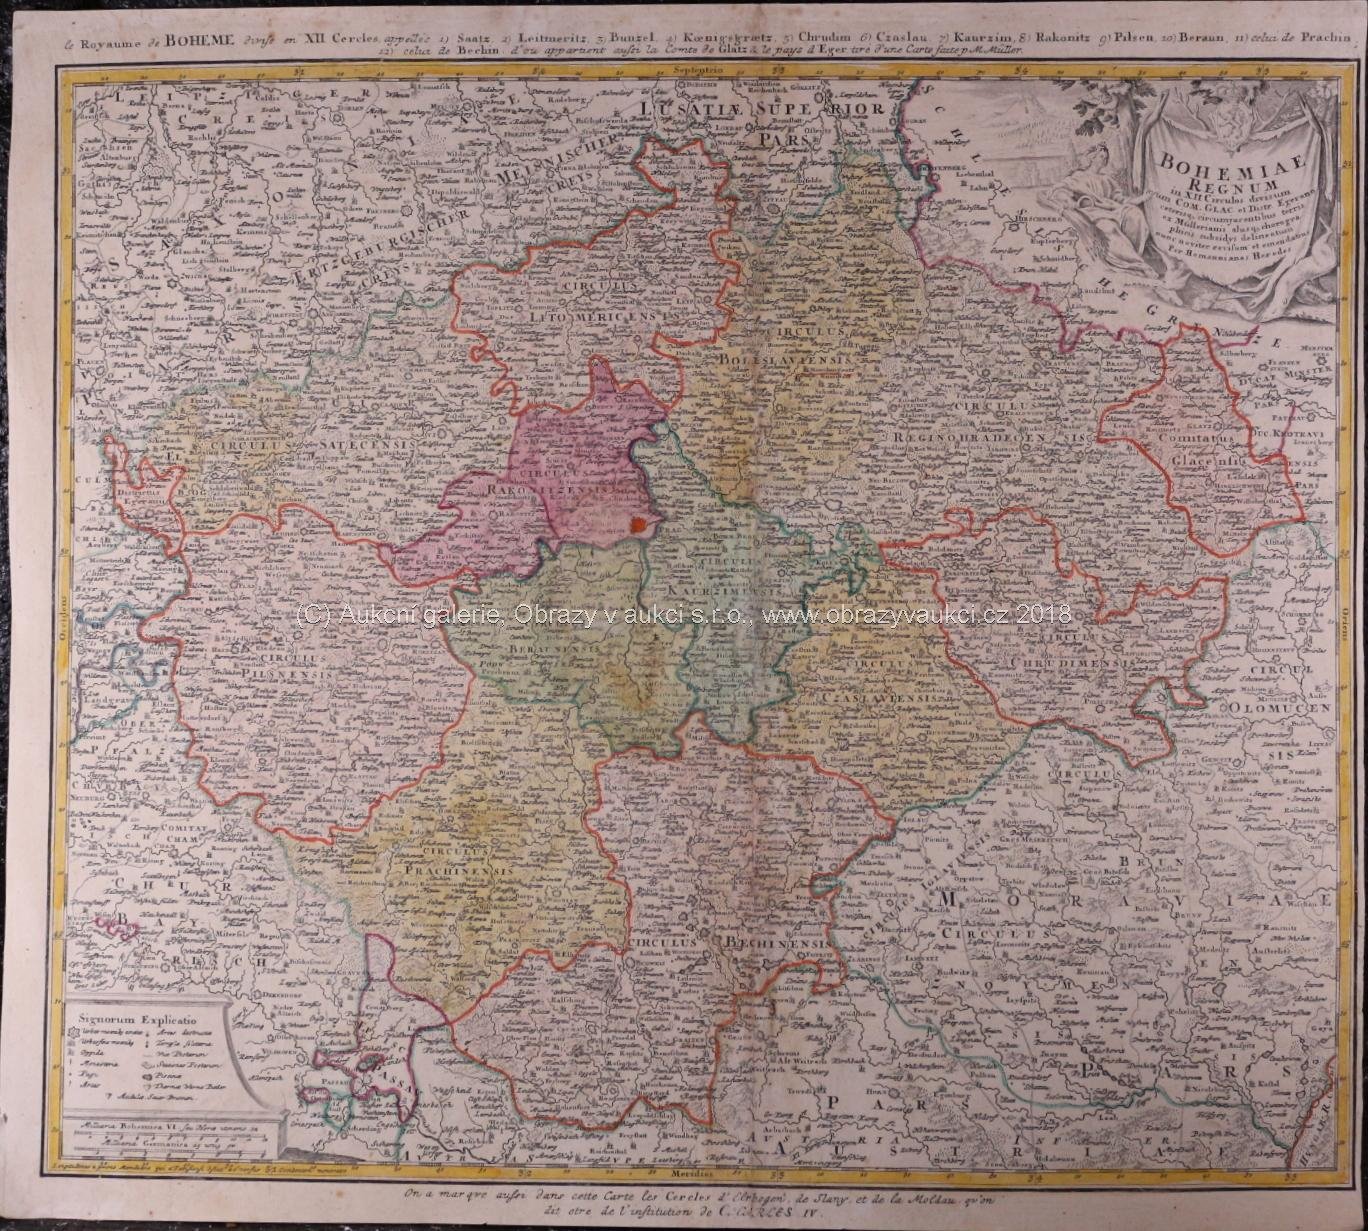 . - Mapa českého království se 12-ti vyznačenými okresy + Kladské hrabství